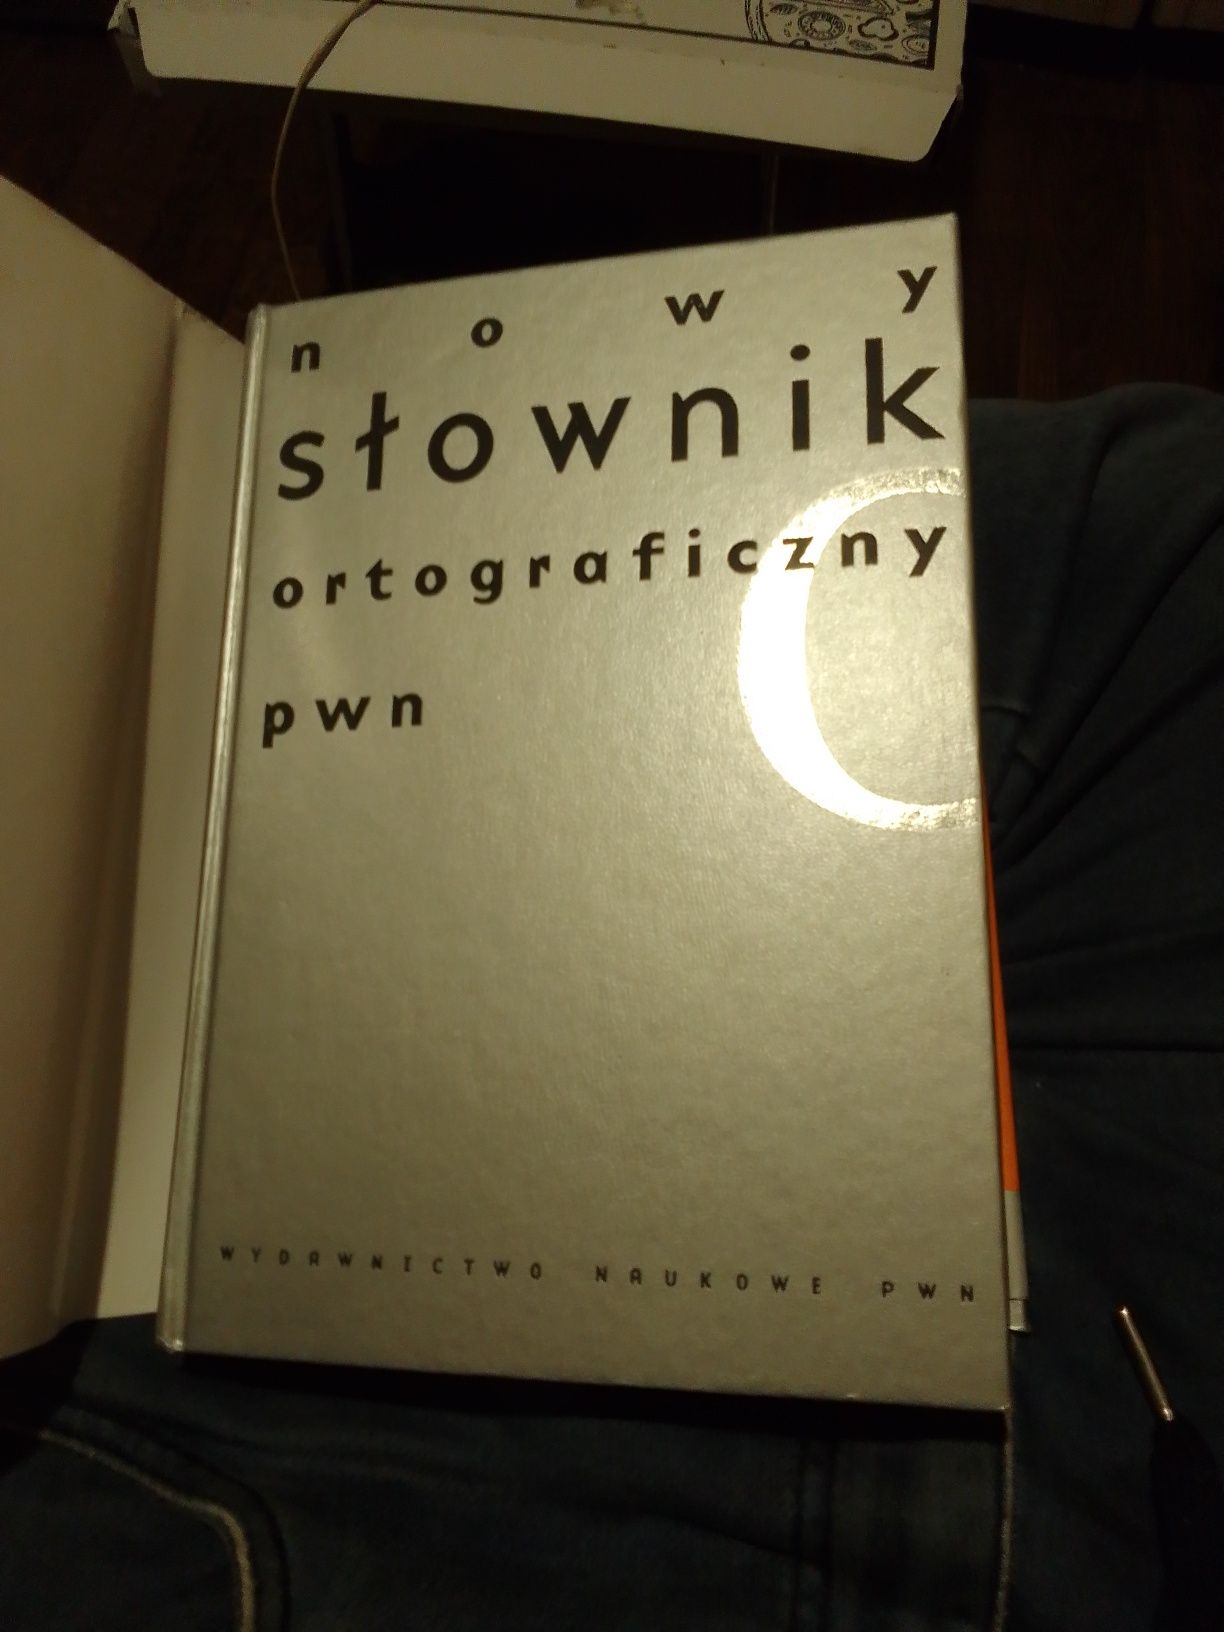 Nowy słownik ortograficzny PWN